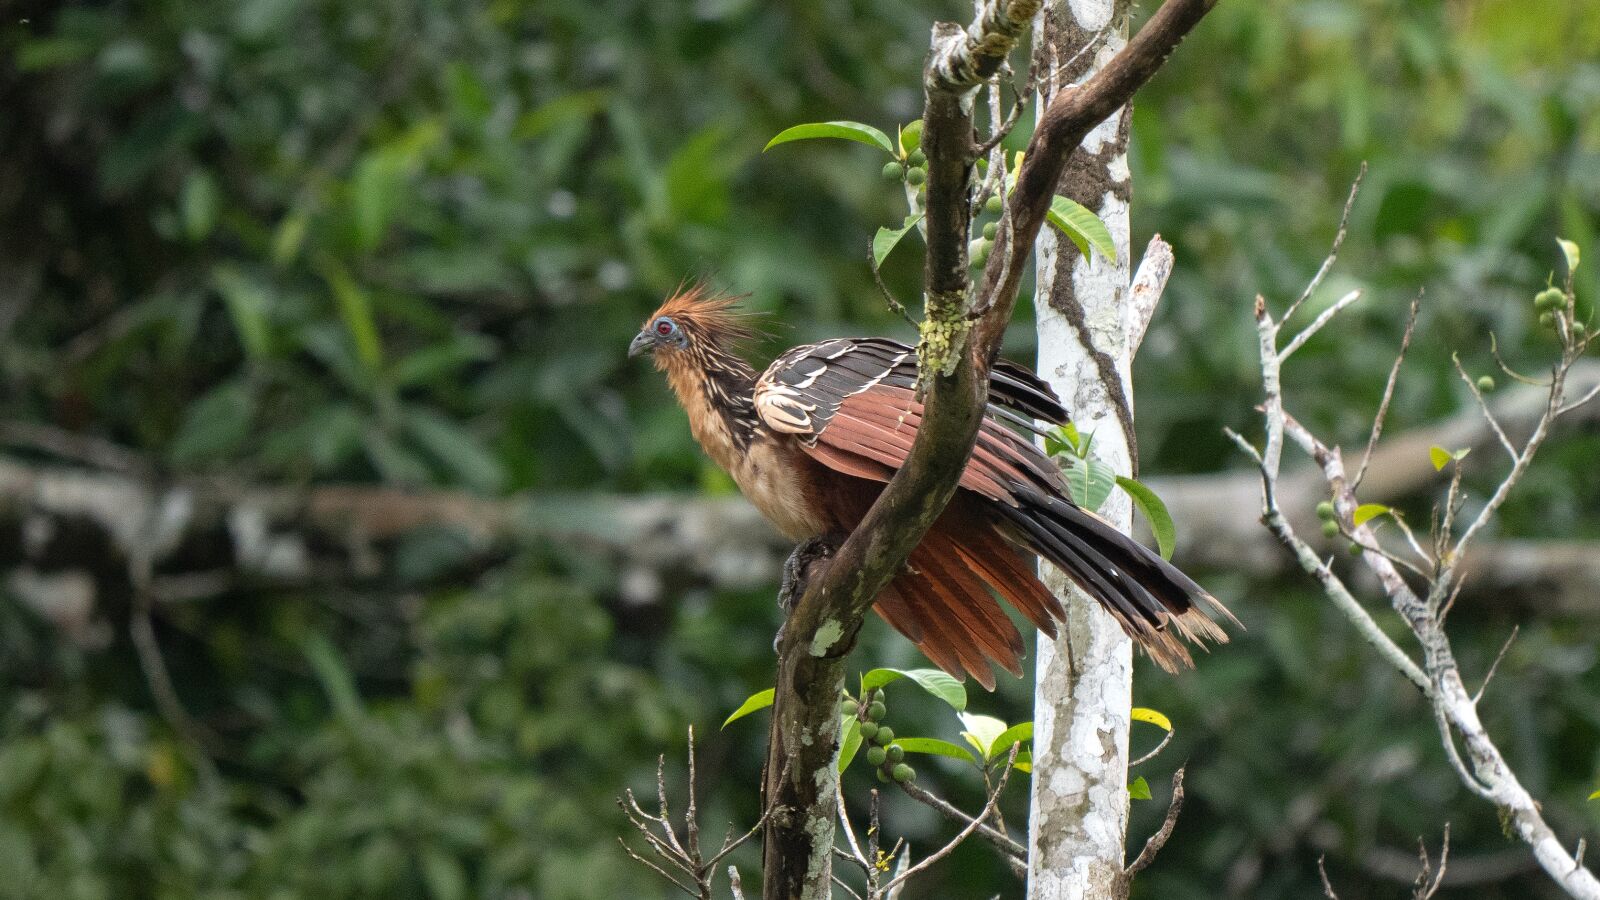 LEICA DG 100-400/F4.0-6.3 sample photo. Ecuador, tropic bird, hoatzin photography